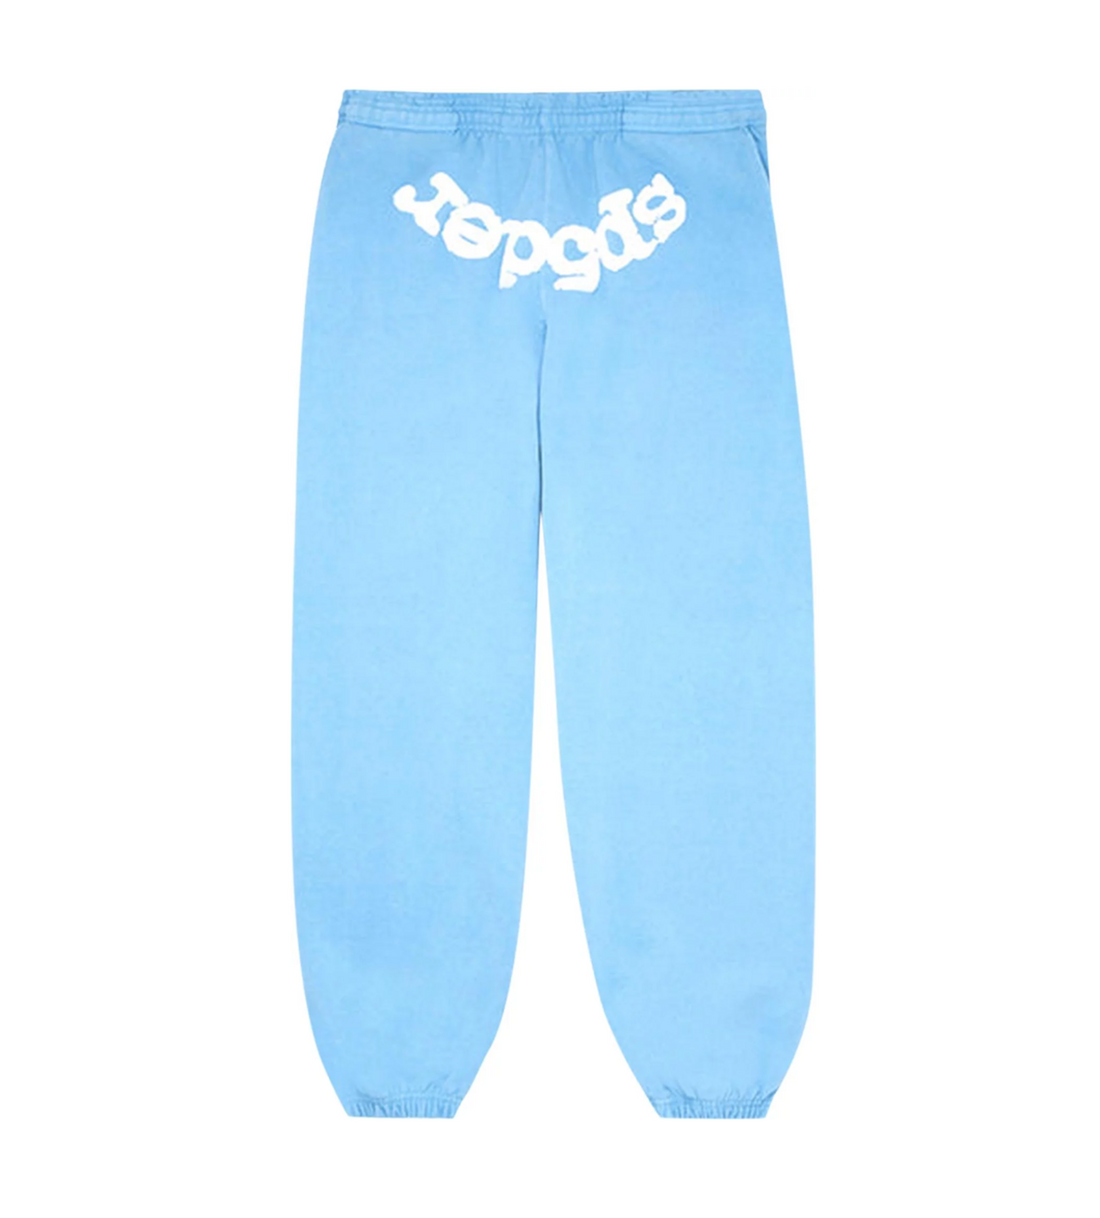 Sp5der Classic Sweatpants Light Blue